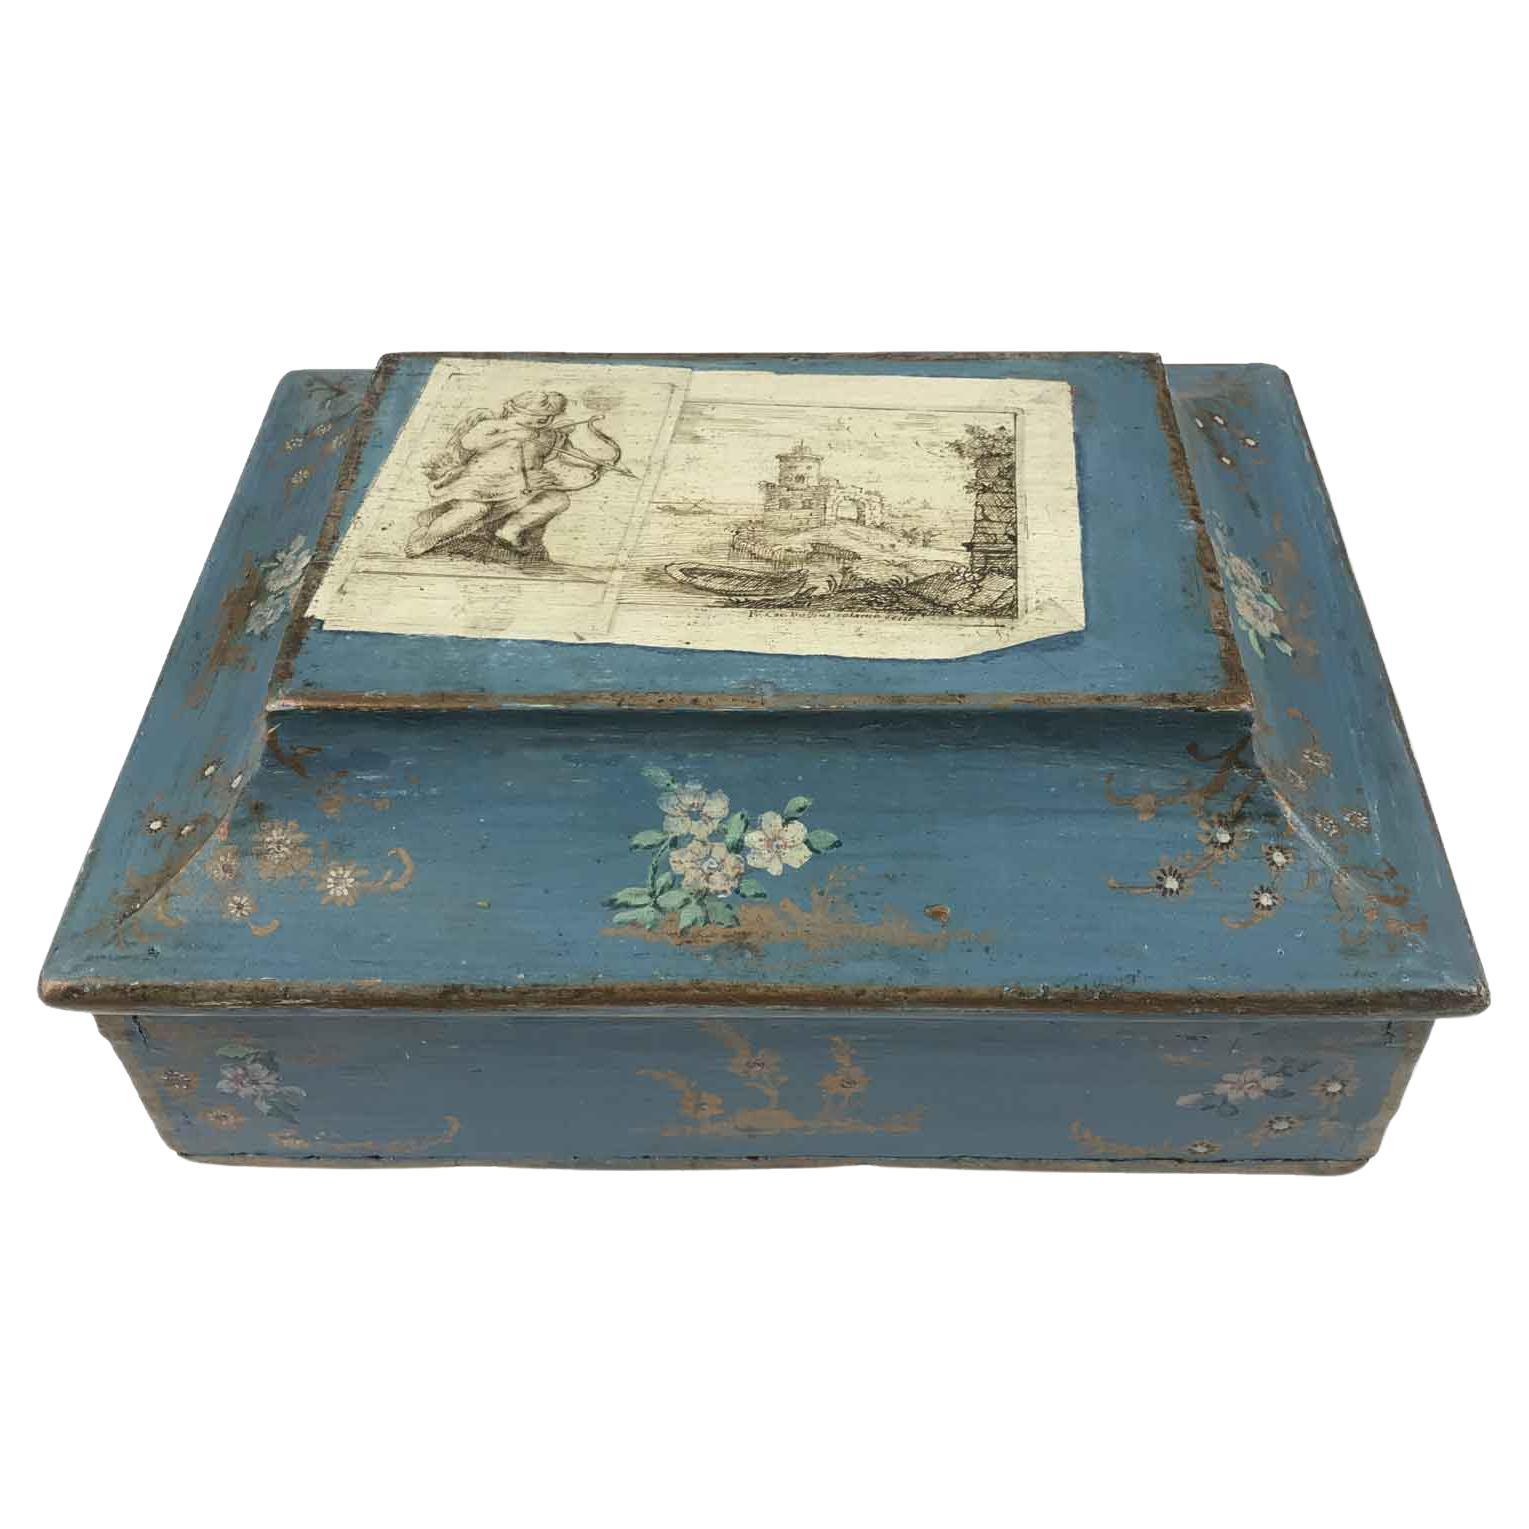 Boîte italienne en bois laqué de la fin du XVIIIe siècle avec faux papiers et fleurs. Réalisée dans des tons bleus et décorée sur toutes ses faces, cette boîte antique italienne romantique est ornée de motifs floraux et végétaux en rose et or, mais